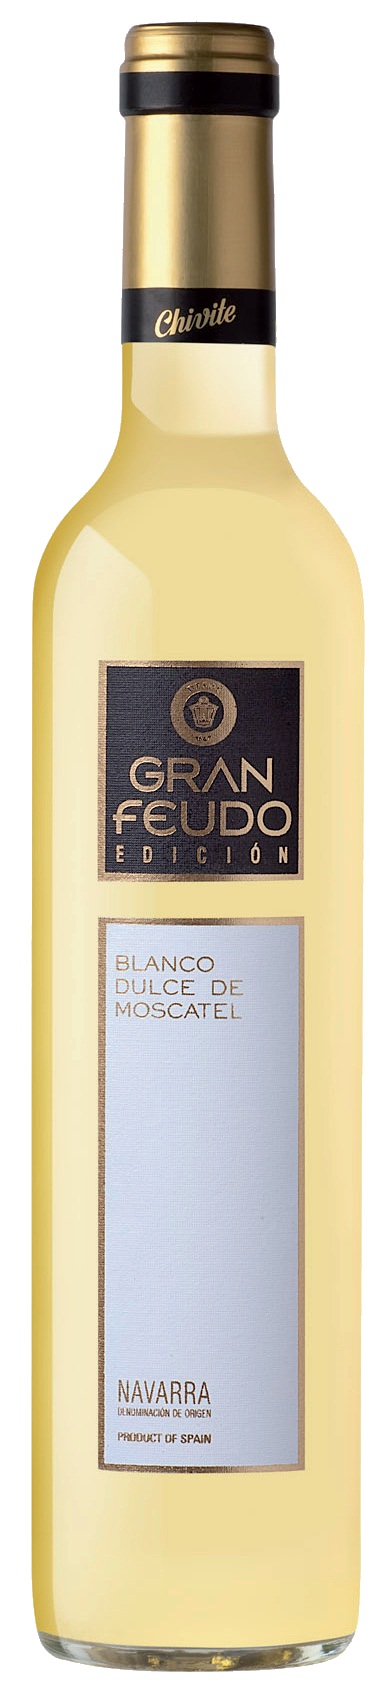 Imagen de la botella de Vino Gran Feudo Chivite Blanco de Moscatel